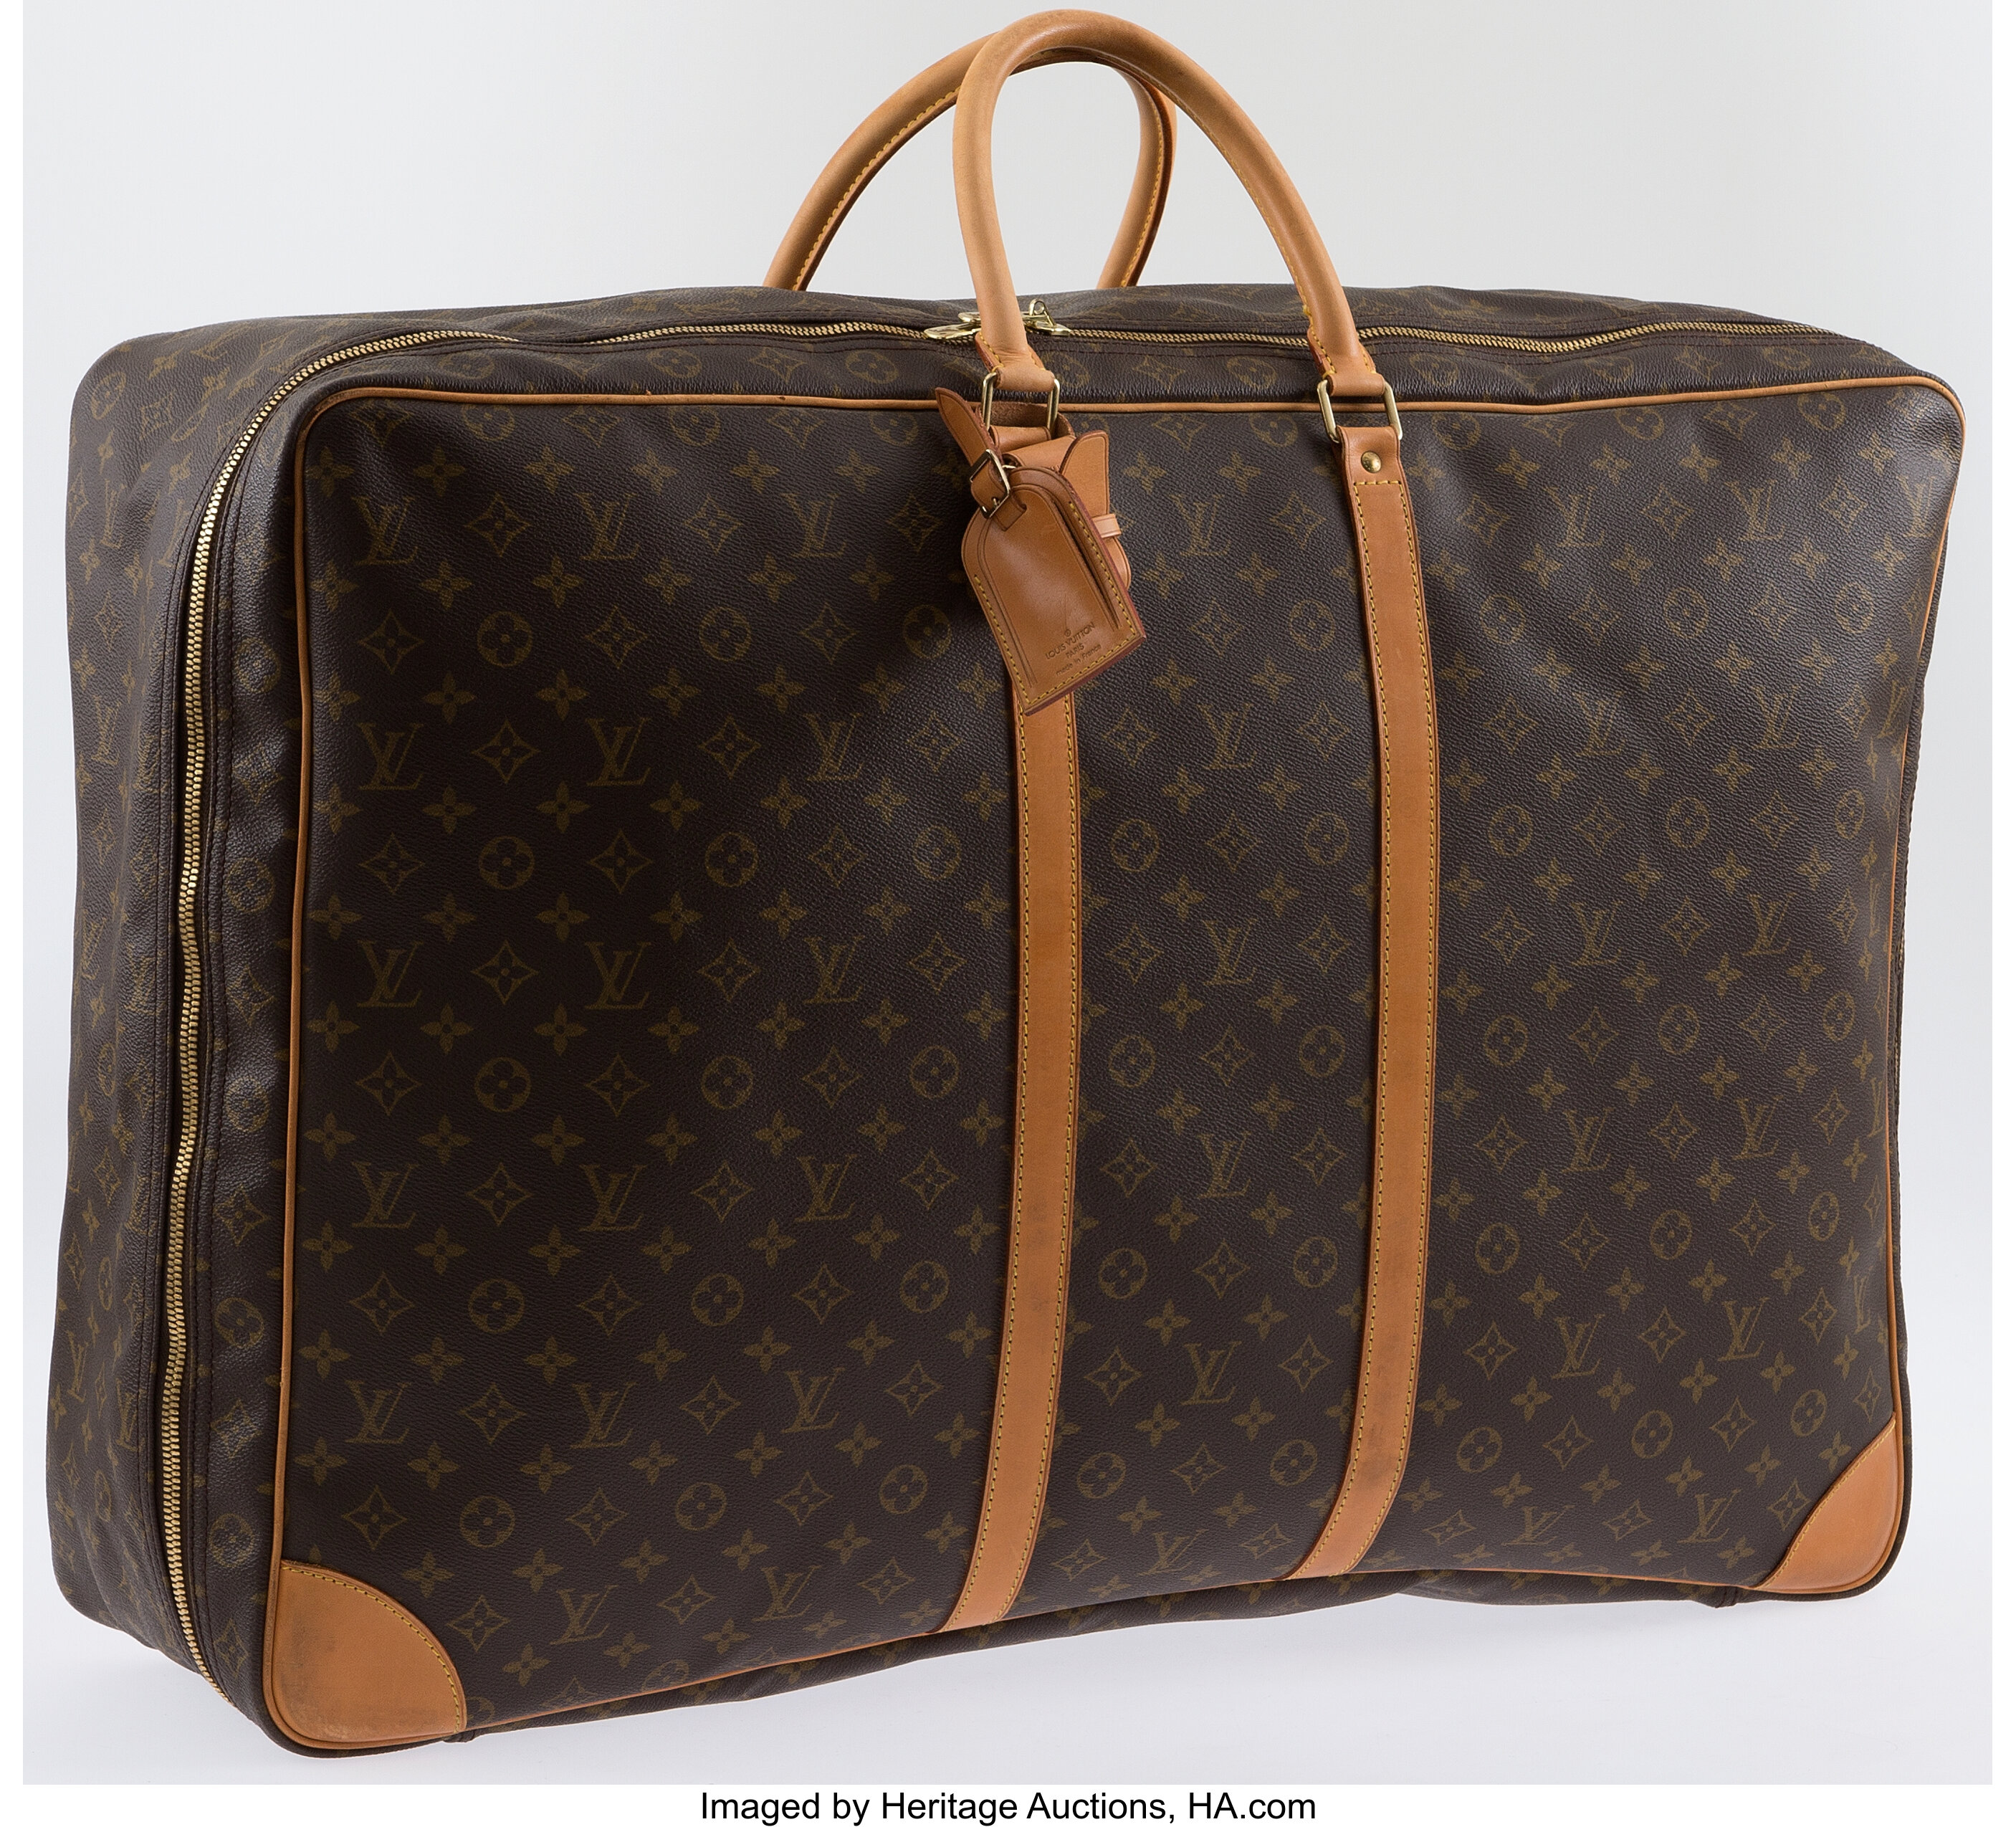 Louis Vuitton Authentic Sirius Classic monogram canvas suitcase